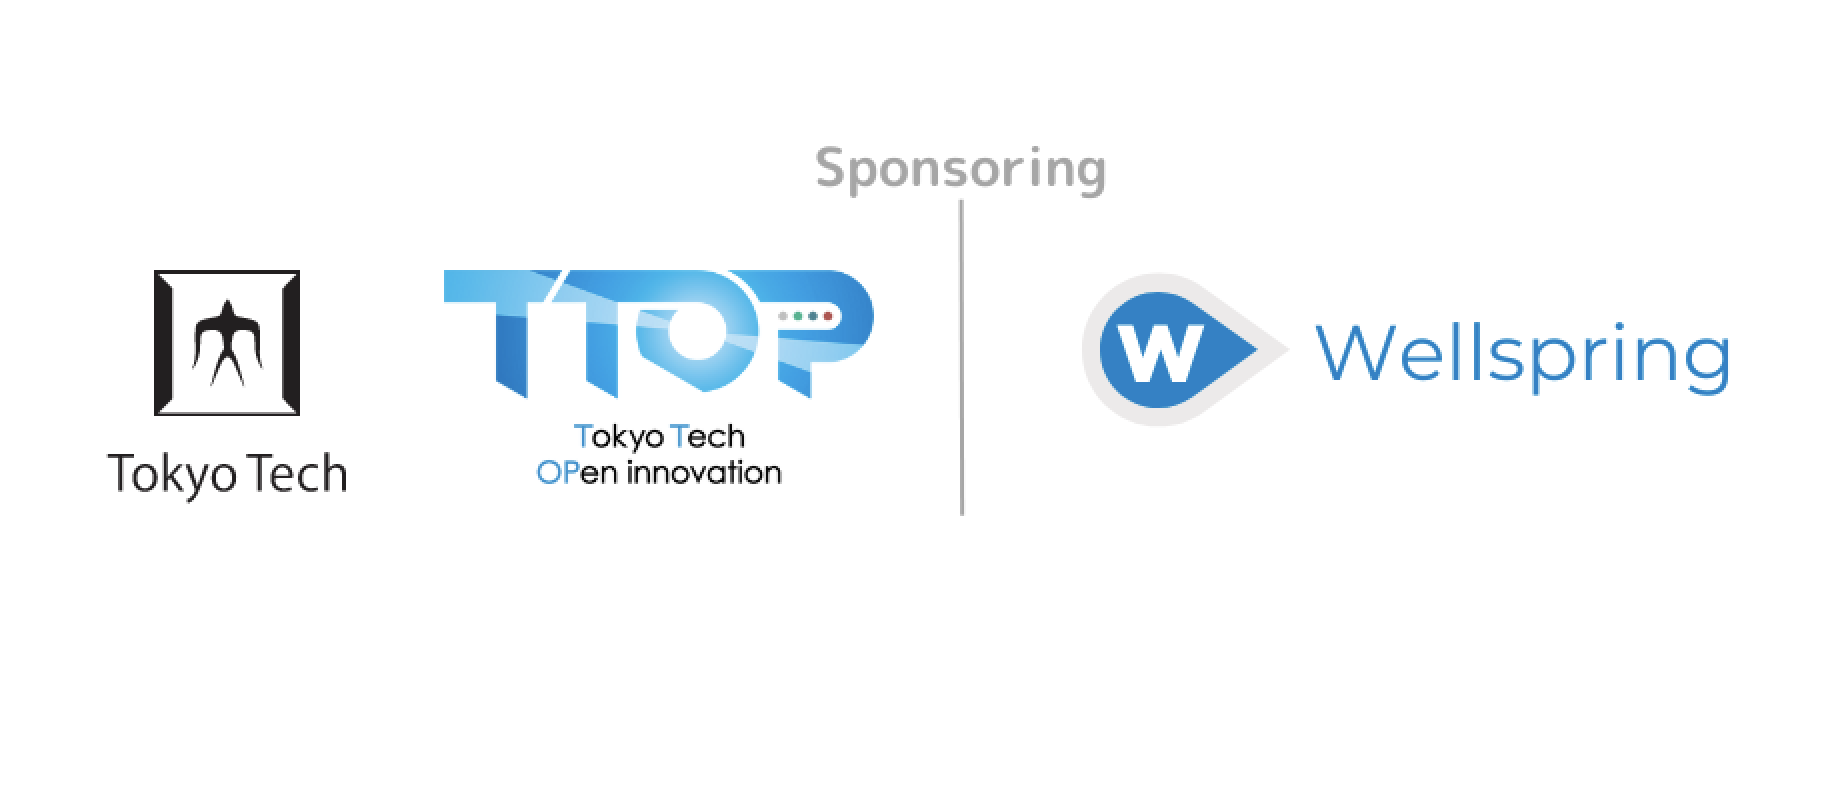 ウェルスプリング ジャパン、日本最大級のアカデミア発オープンイノベーションイベントTTOPに協賛 ーアカデミア・ビジネス間のオープンイノベーション創出の取り組みに賛同ー